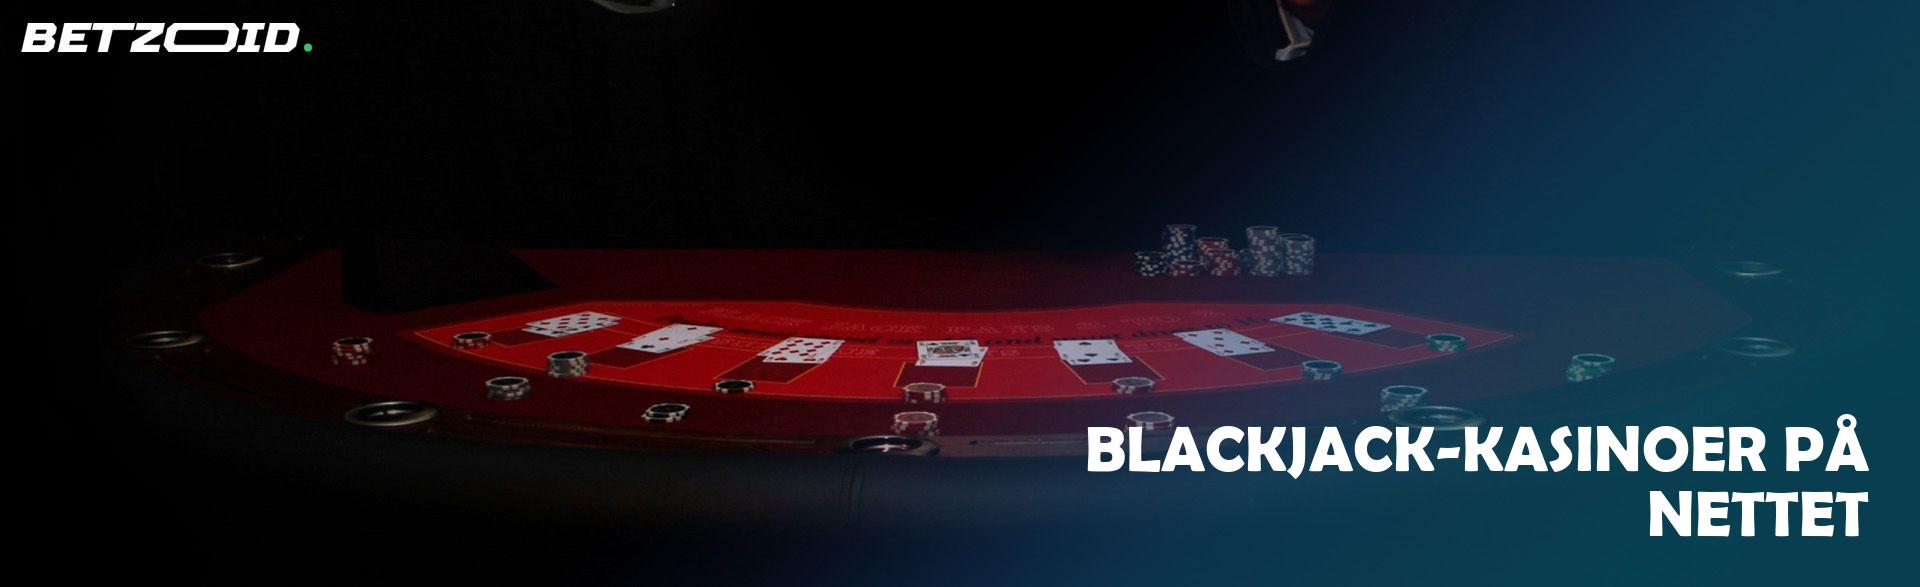 Blackjack-Kasinoer på Nettet.